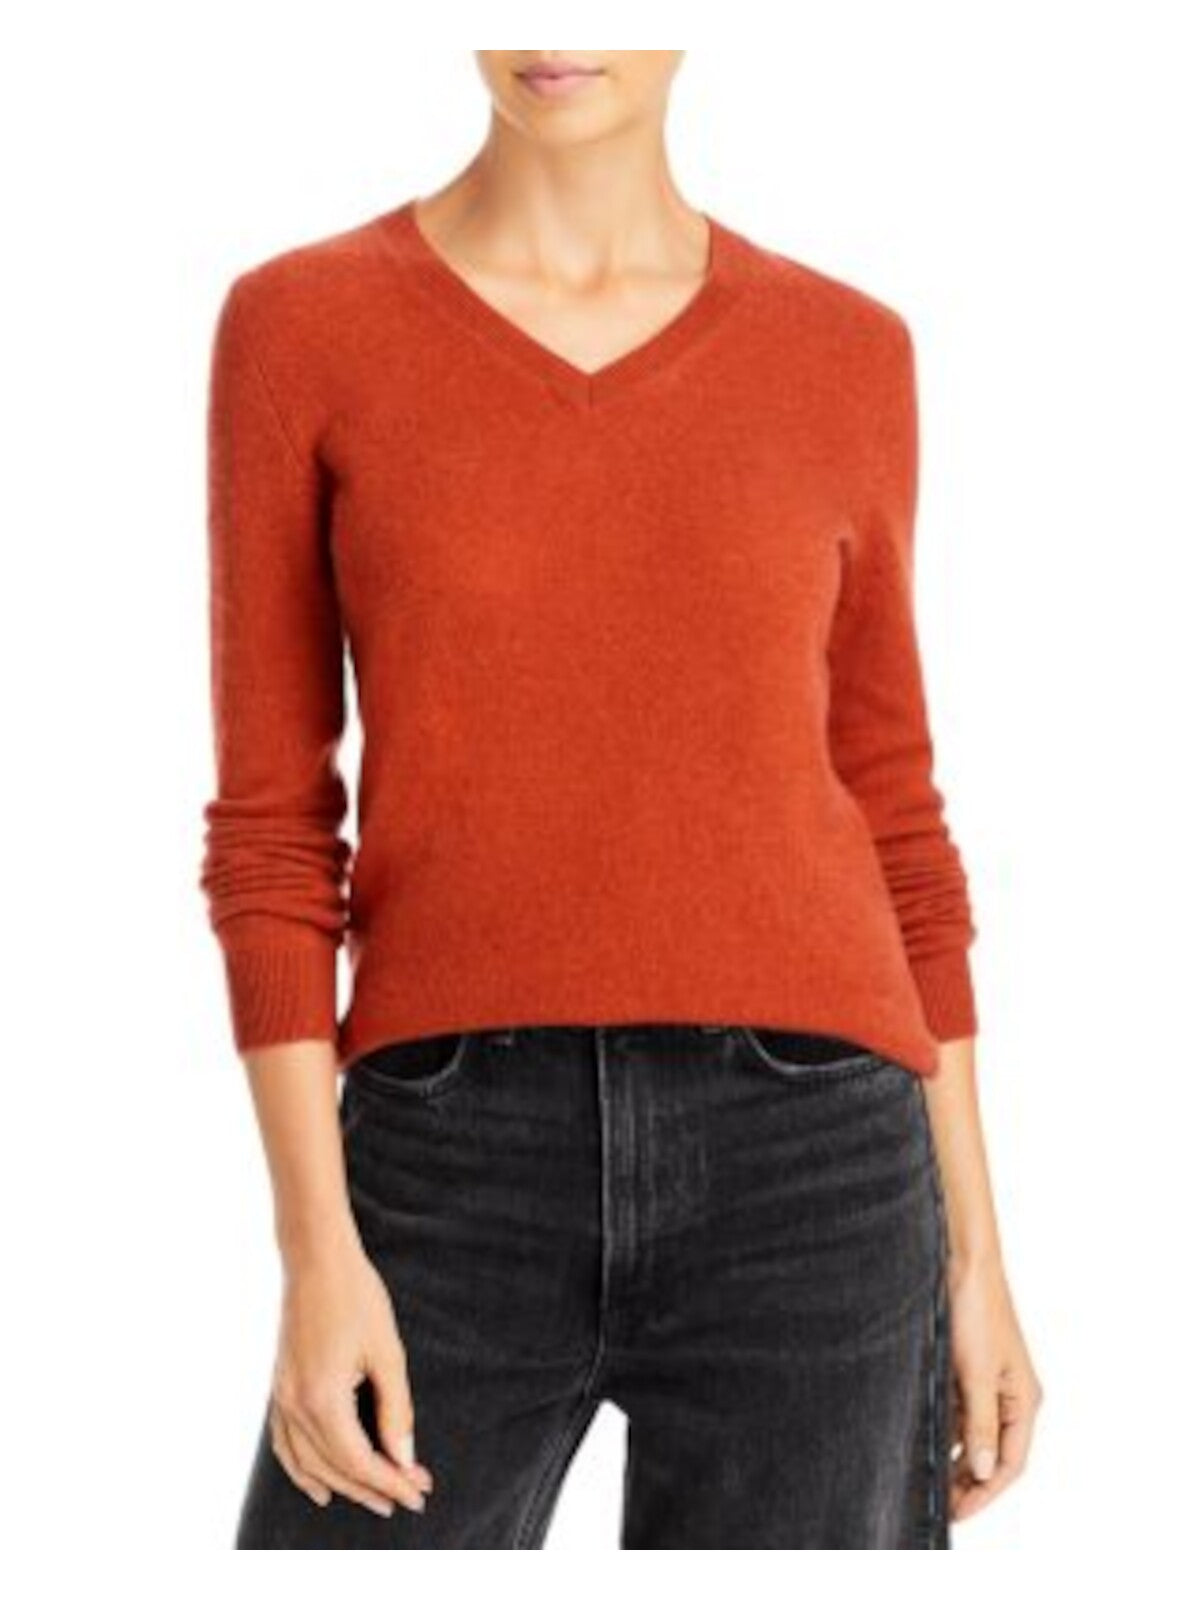 Designer Brand Womens Orange Long Sleeve V Neck Sweater XS